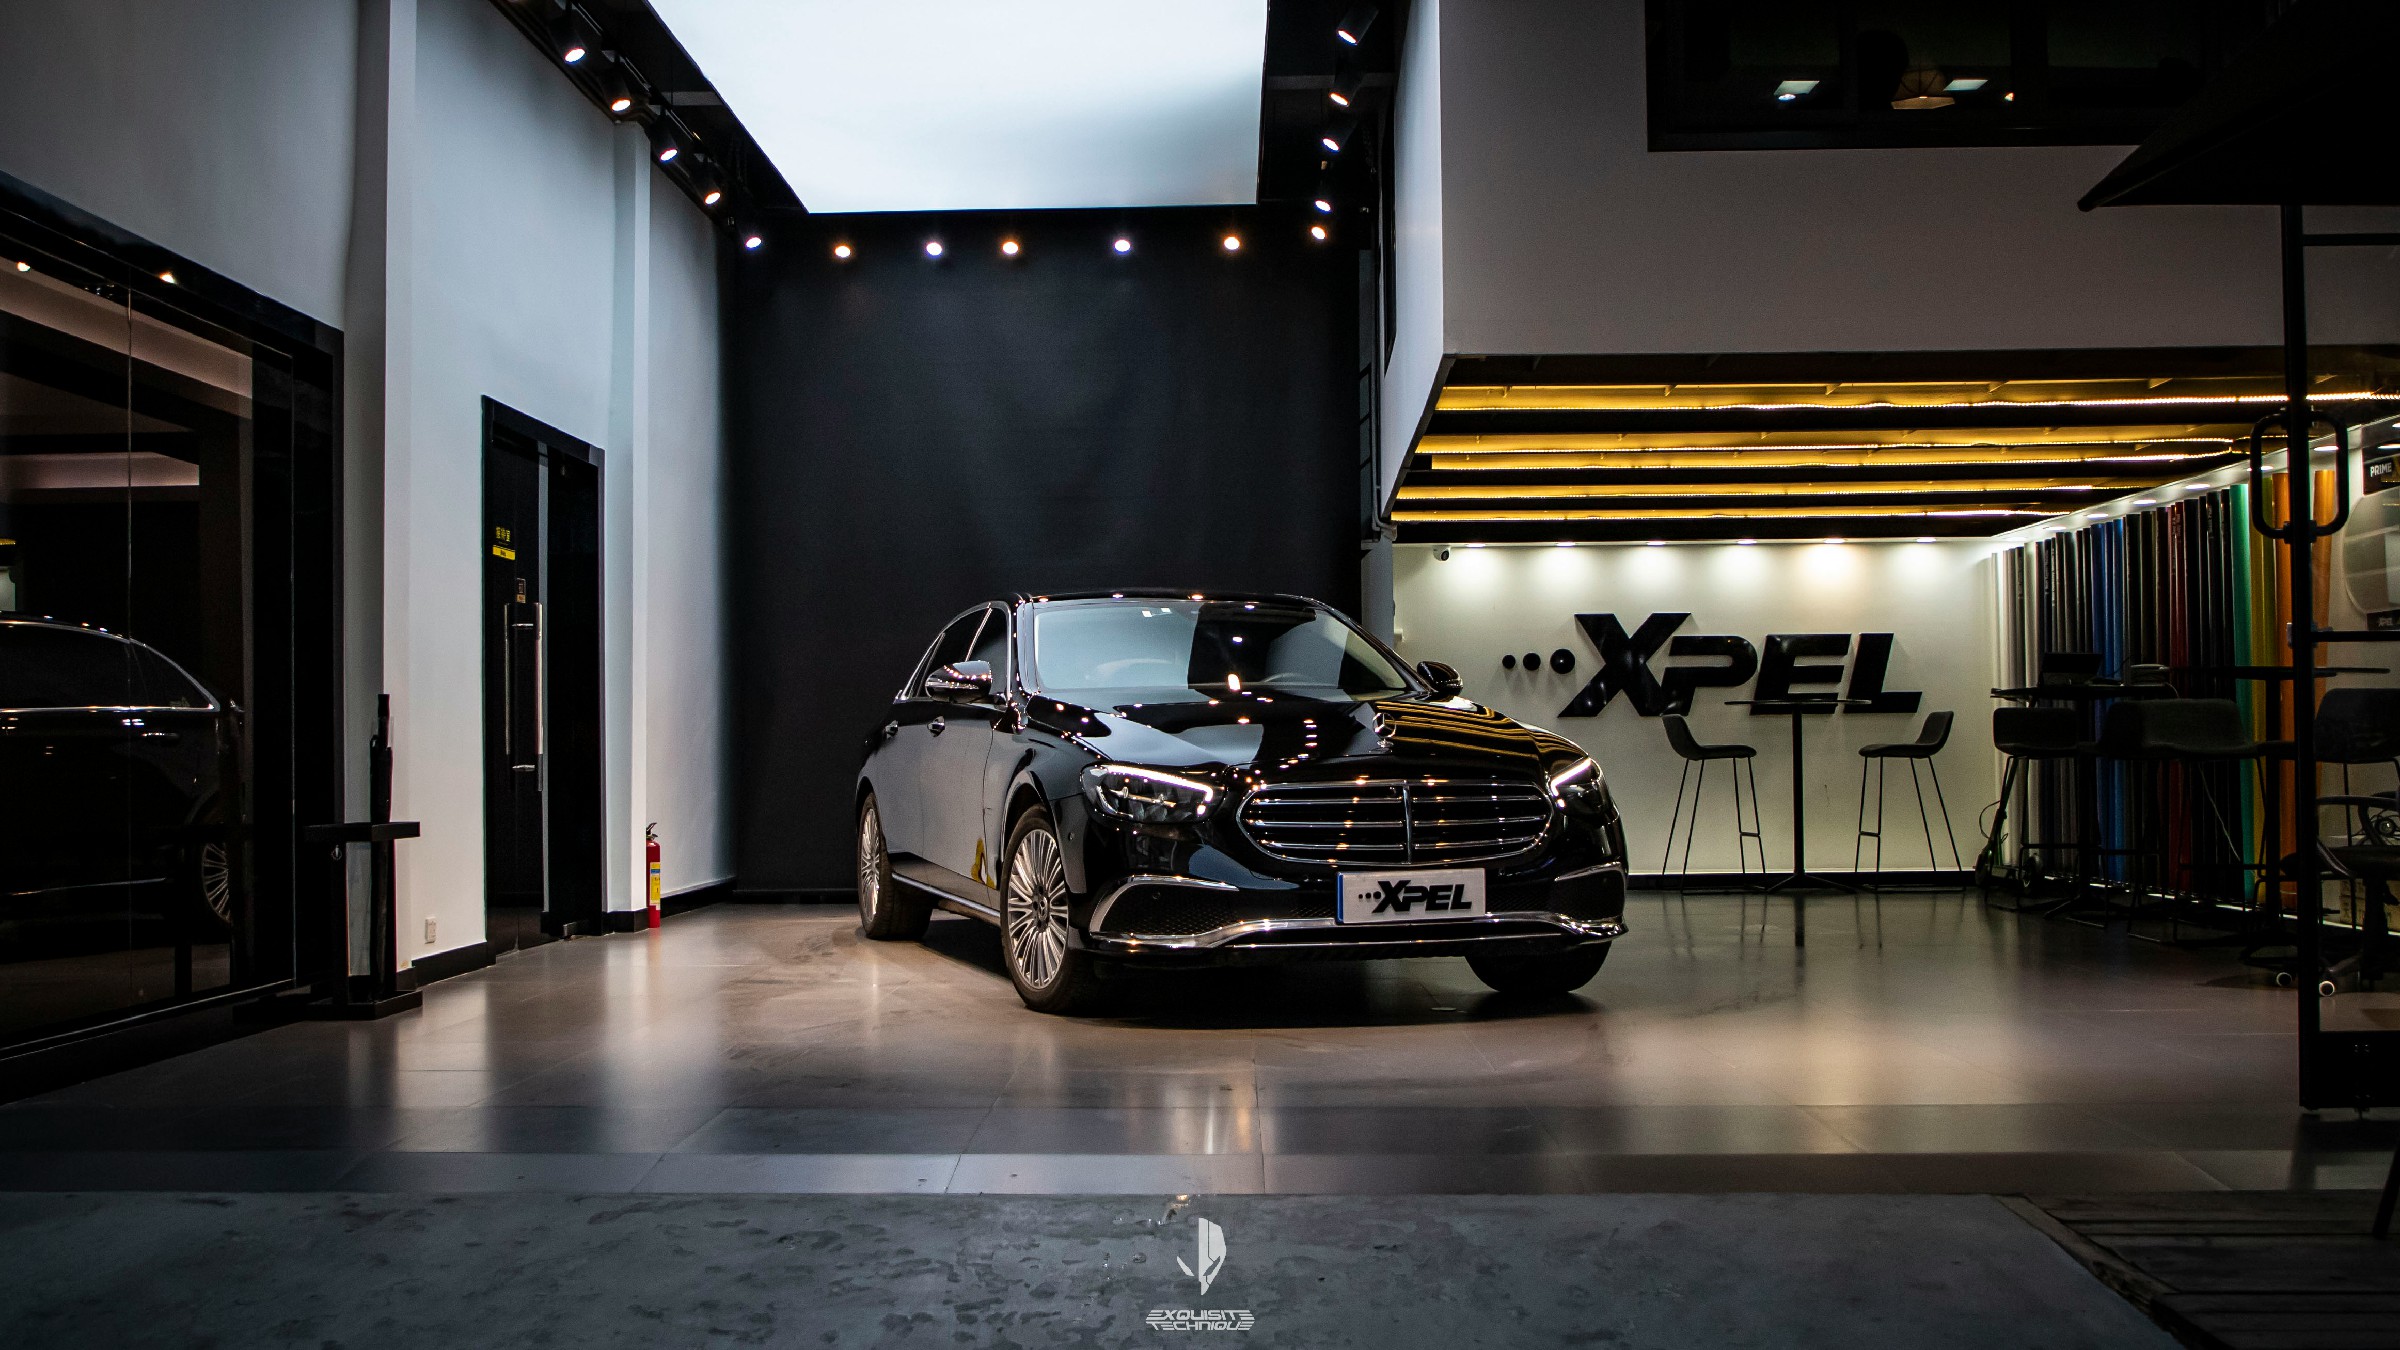 2021.8.21奔驰E300 XPEL LUX MAX